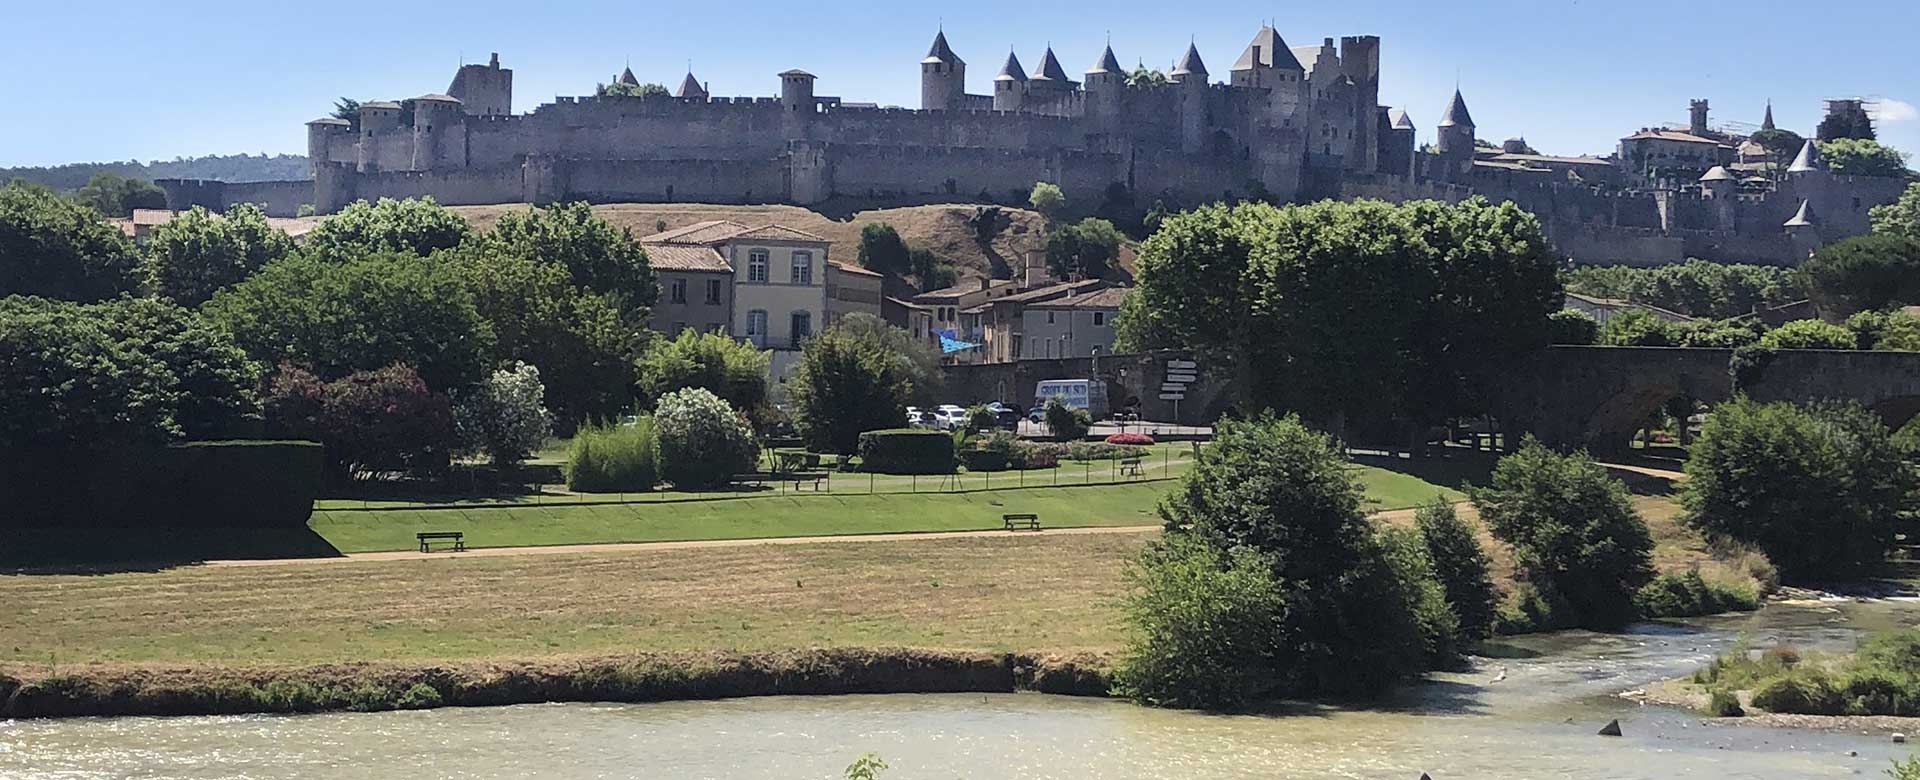 Le camping de Montolieu est à proximité de la cité de Carcassonne.